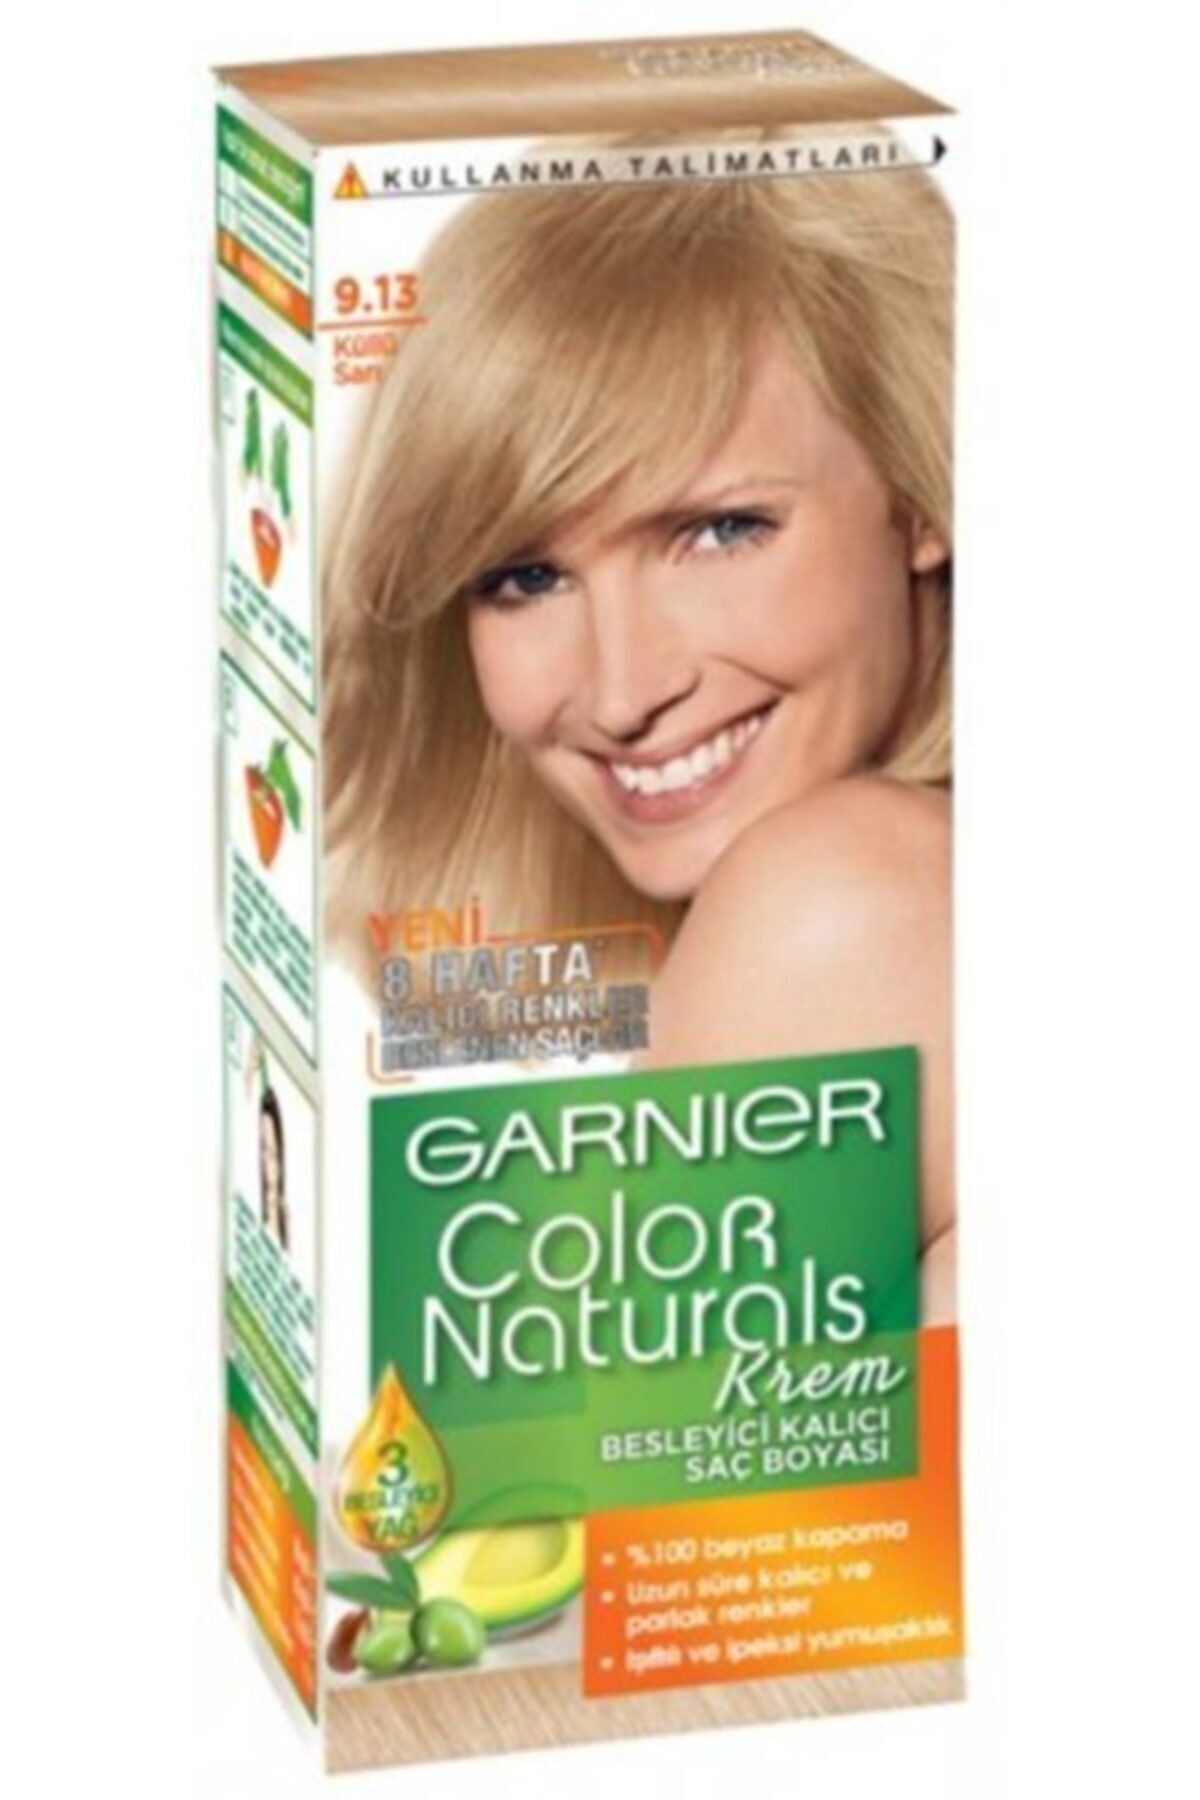 Гарньер краска для волос светло. Краска для волос Garnier Color naturals 9.0. Краска гарньер колор нейчералс 9.0. Краска гарньер палитра 9.13. Garnier Color naturals палитра блонд 9.